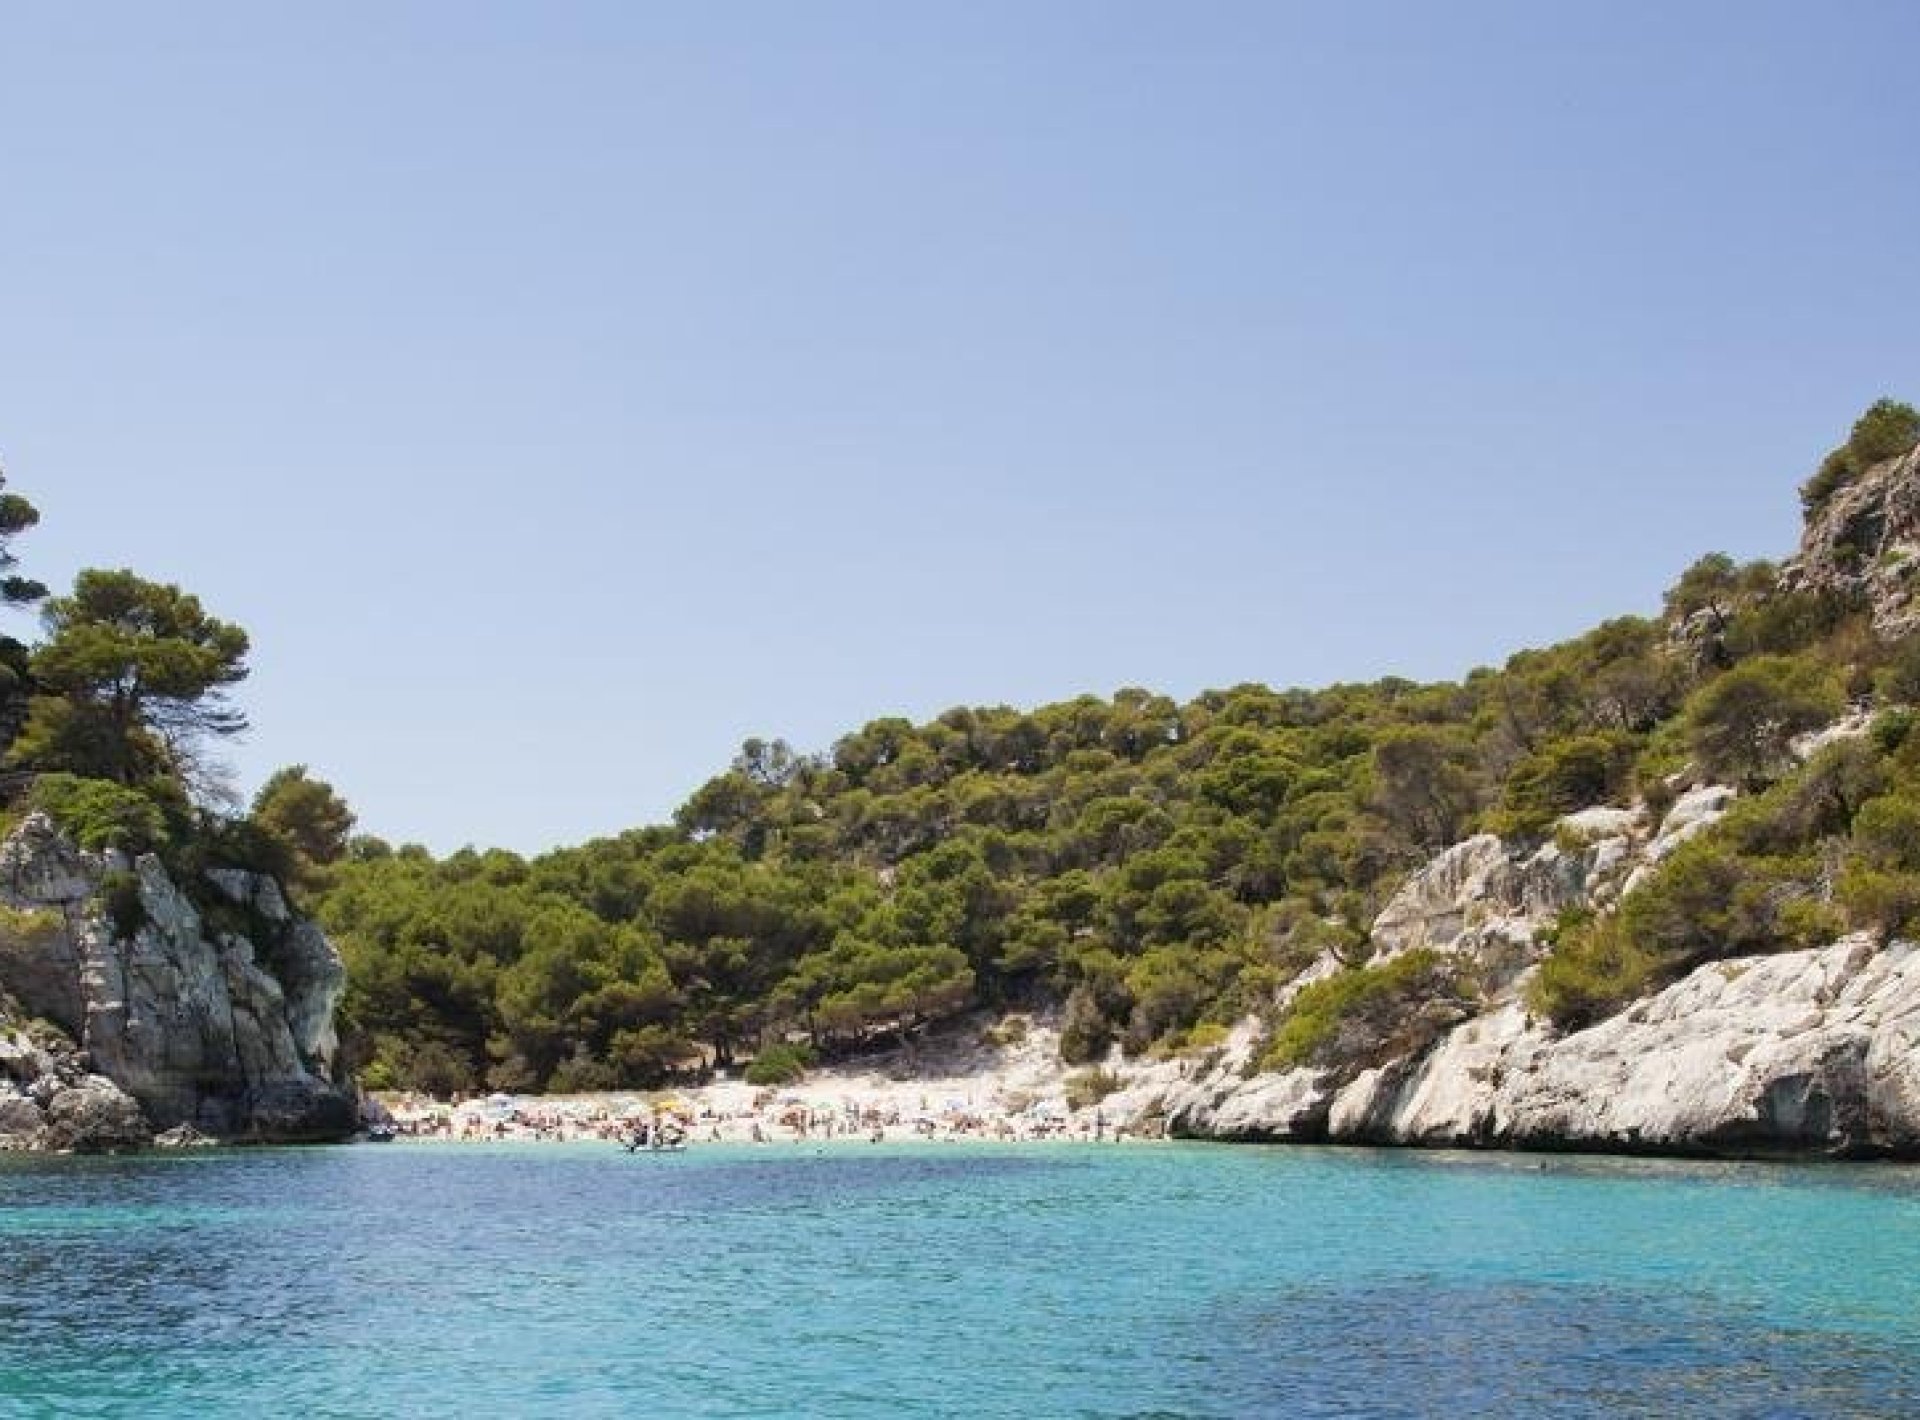 ISholidays Menorca apt 2 dormitorios